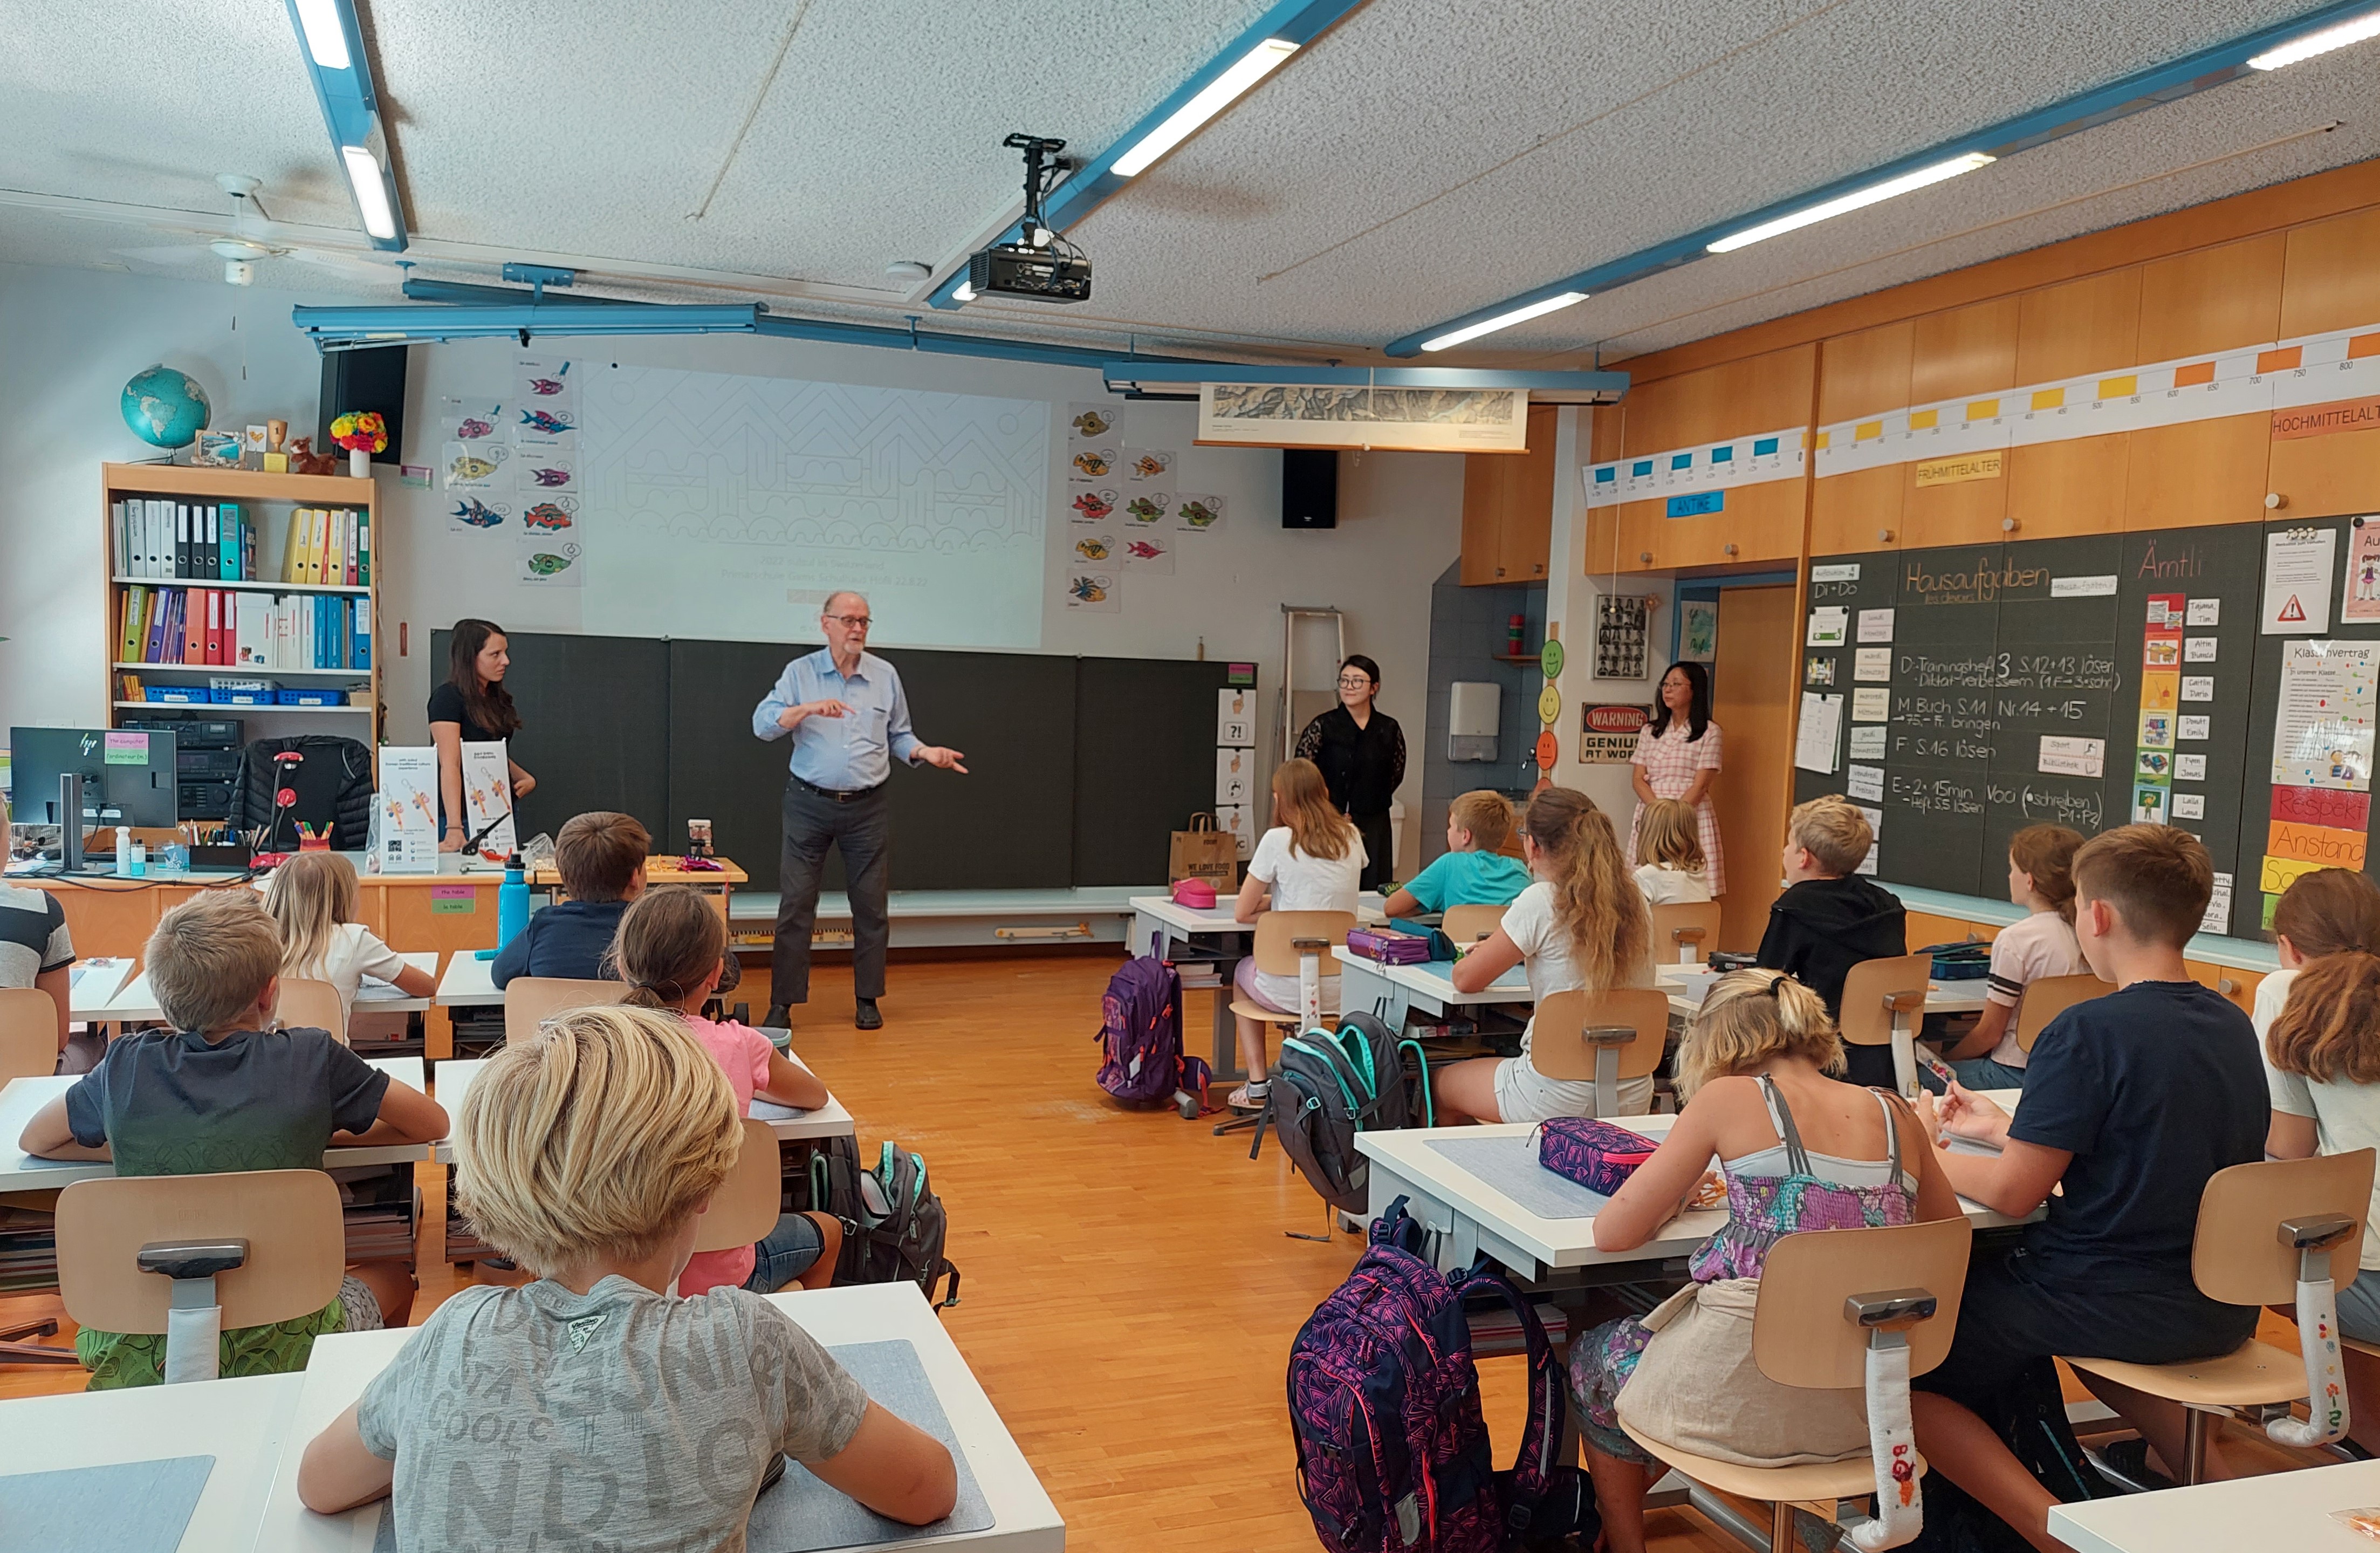 < 스위스 감스회플리초등학교에서 선보인 '매듭공예 수업'에서 설명 중인 다니엘 켈러할스씨 - 출처: 통신원 촬영 >